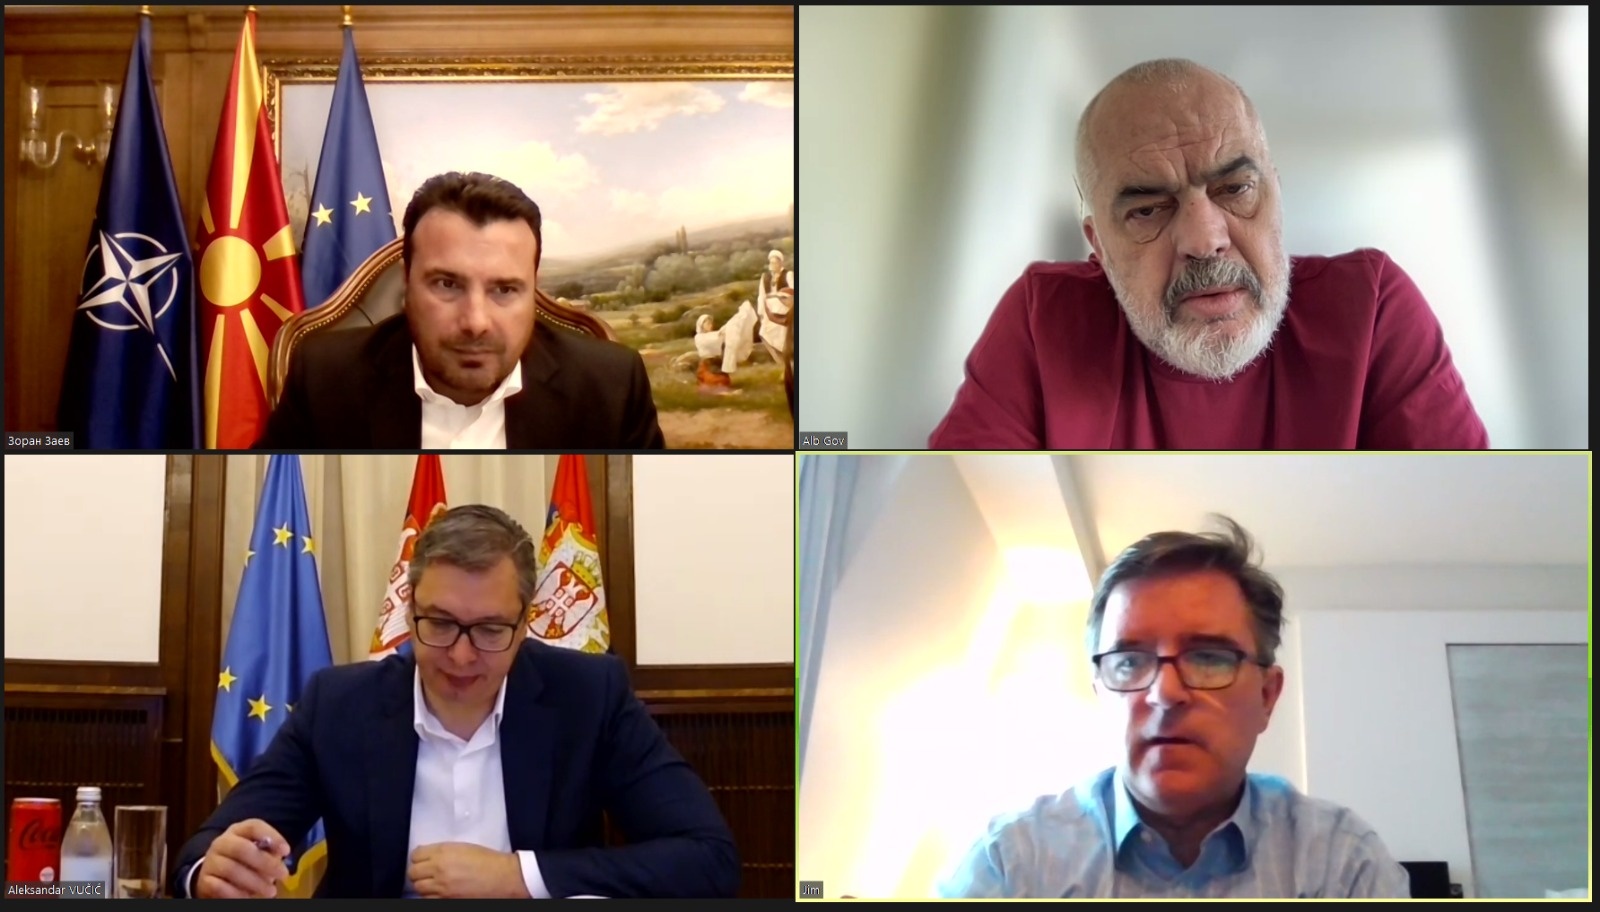 Rama, Vučić, Zaev Discuss Future of Mini Schengen for the Western Balkans